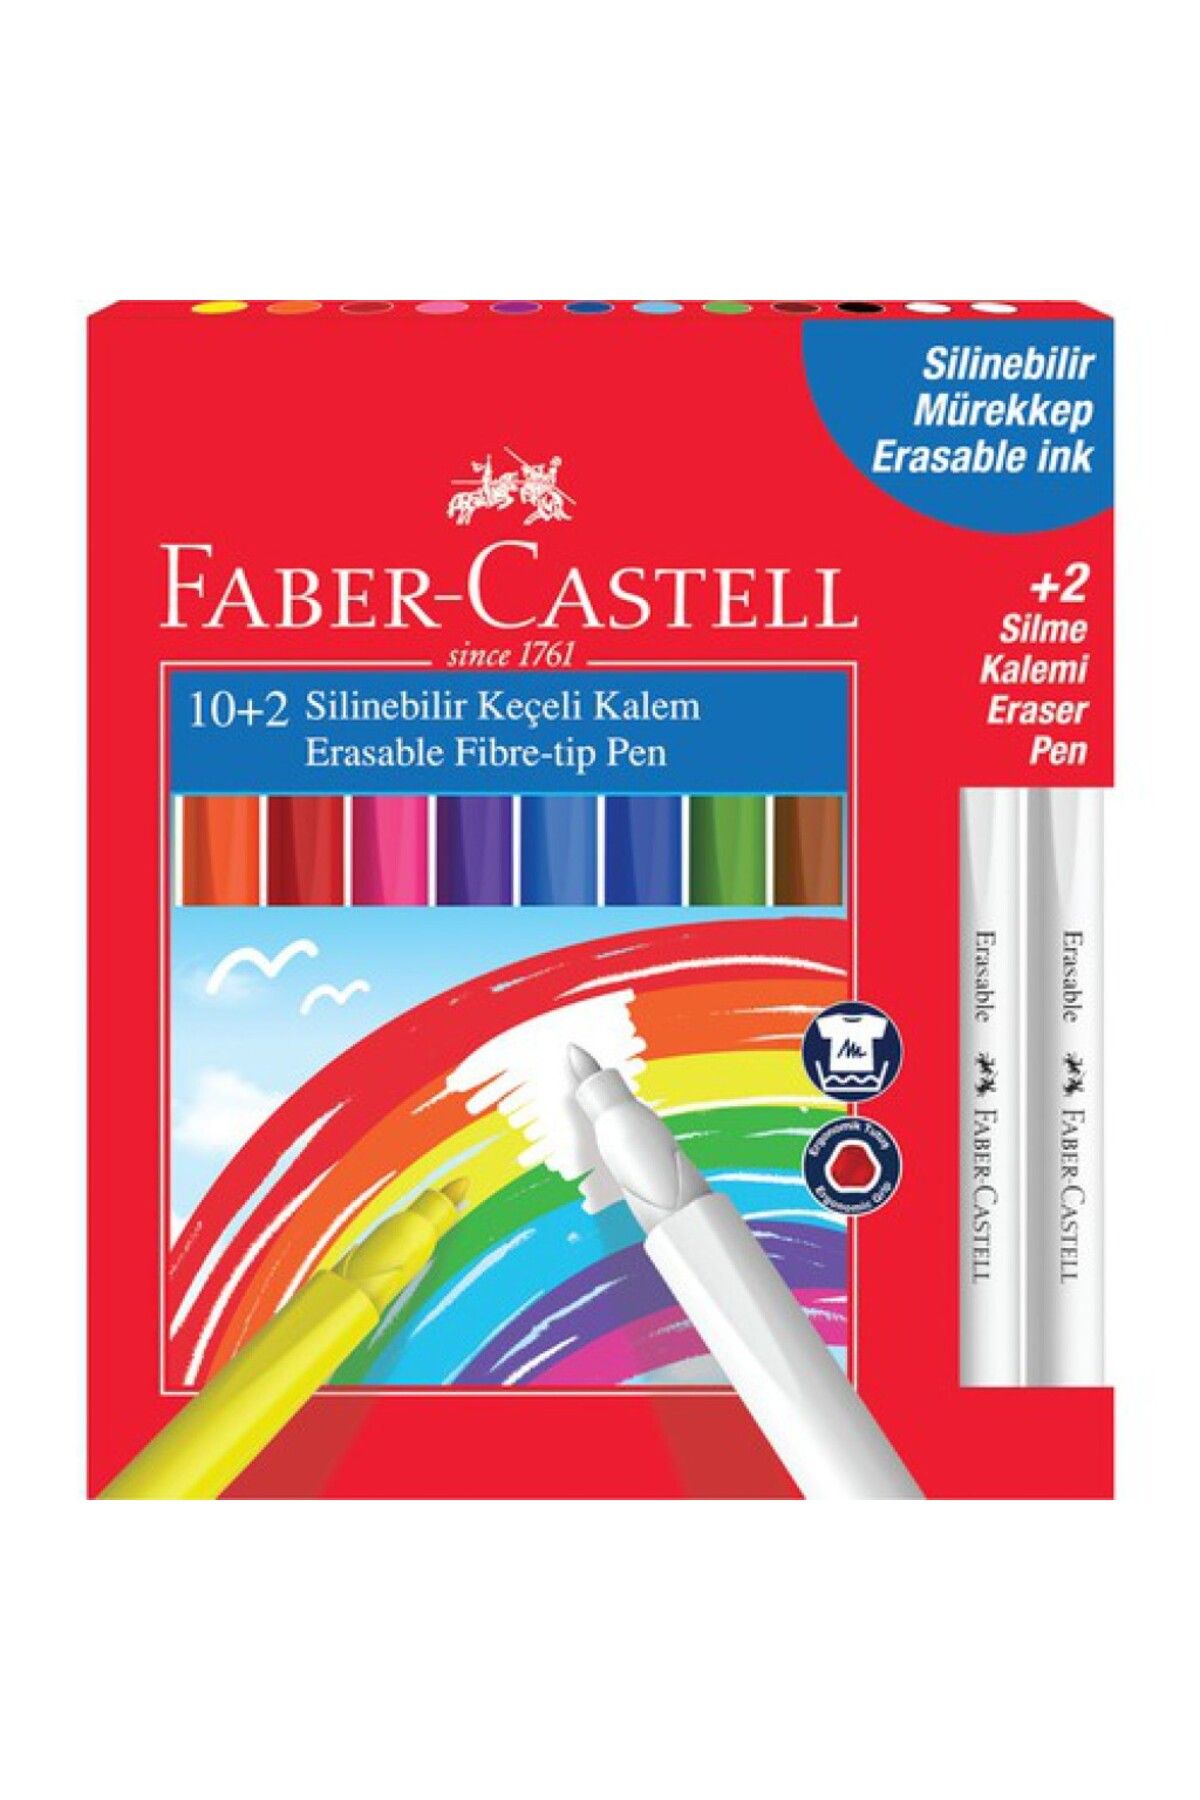 Faber Castell 12 Li Silinebilir Keçeli Kalem * Yeni